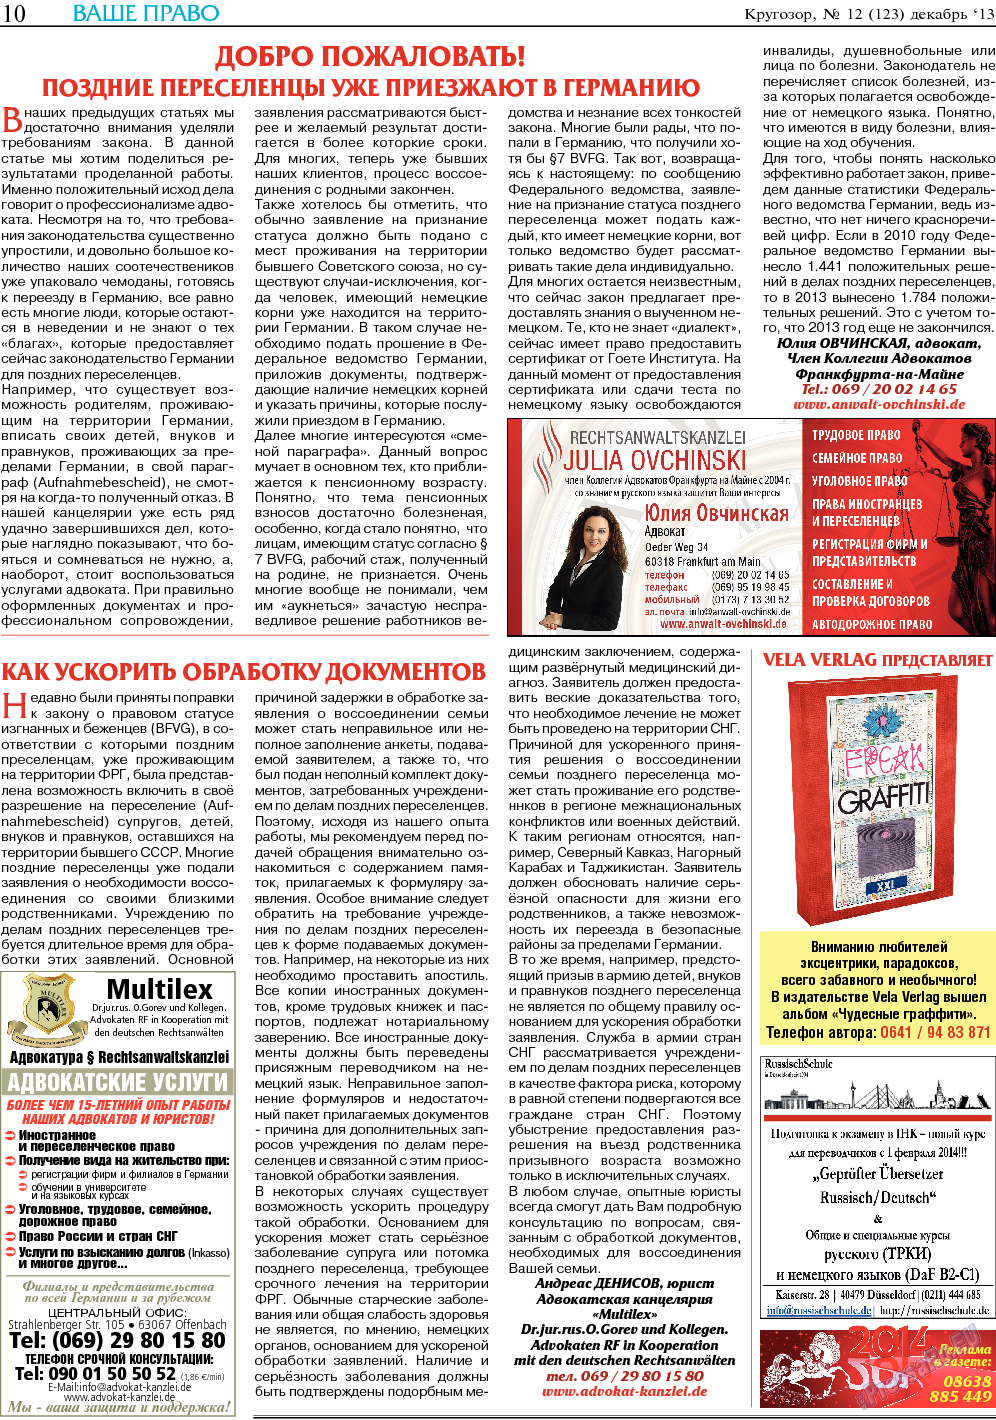 Кругозор (газета). 2013 год, номер 12, стр. 10